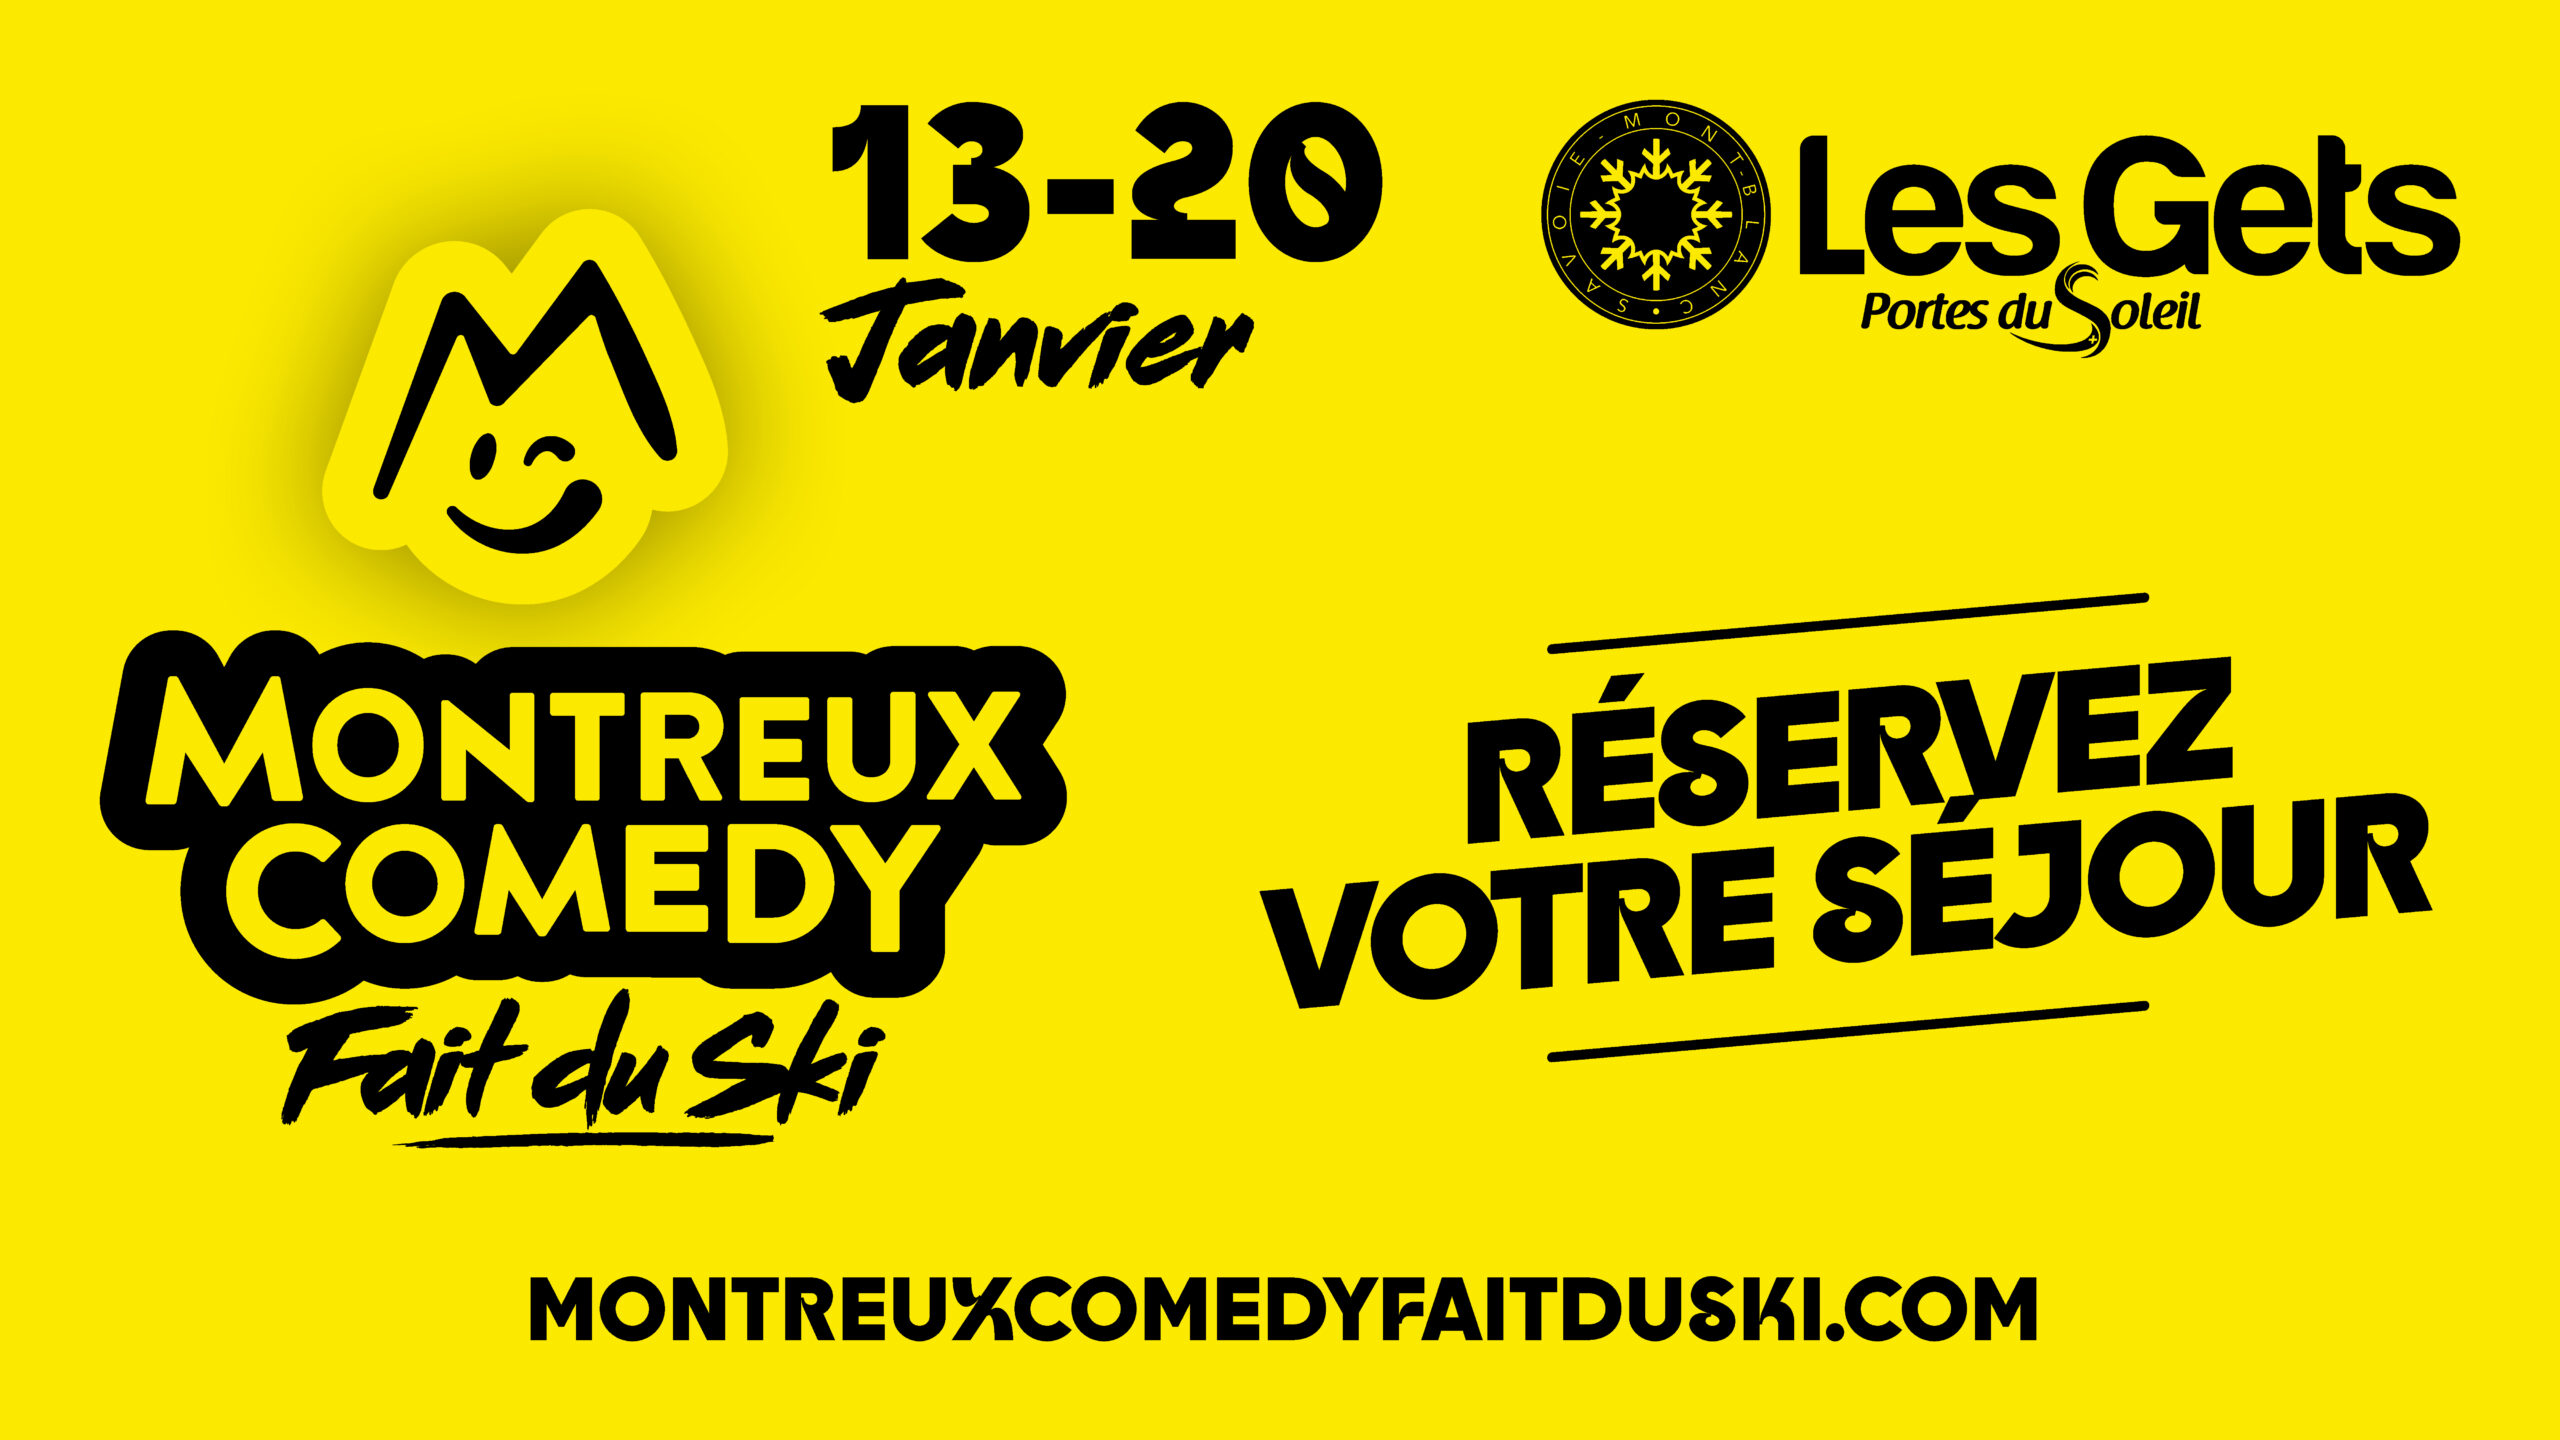 Montreux Comedy fait du Ski